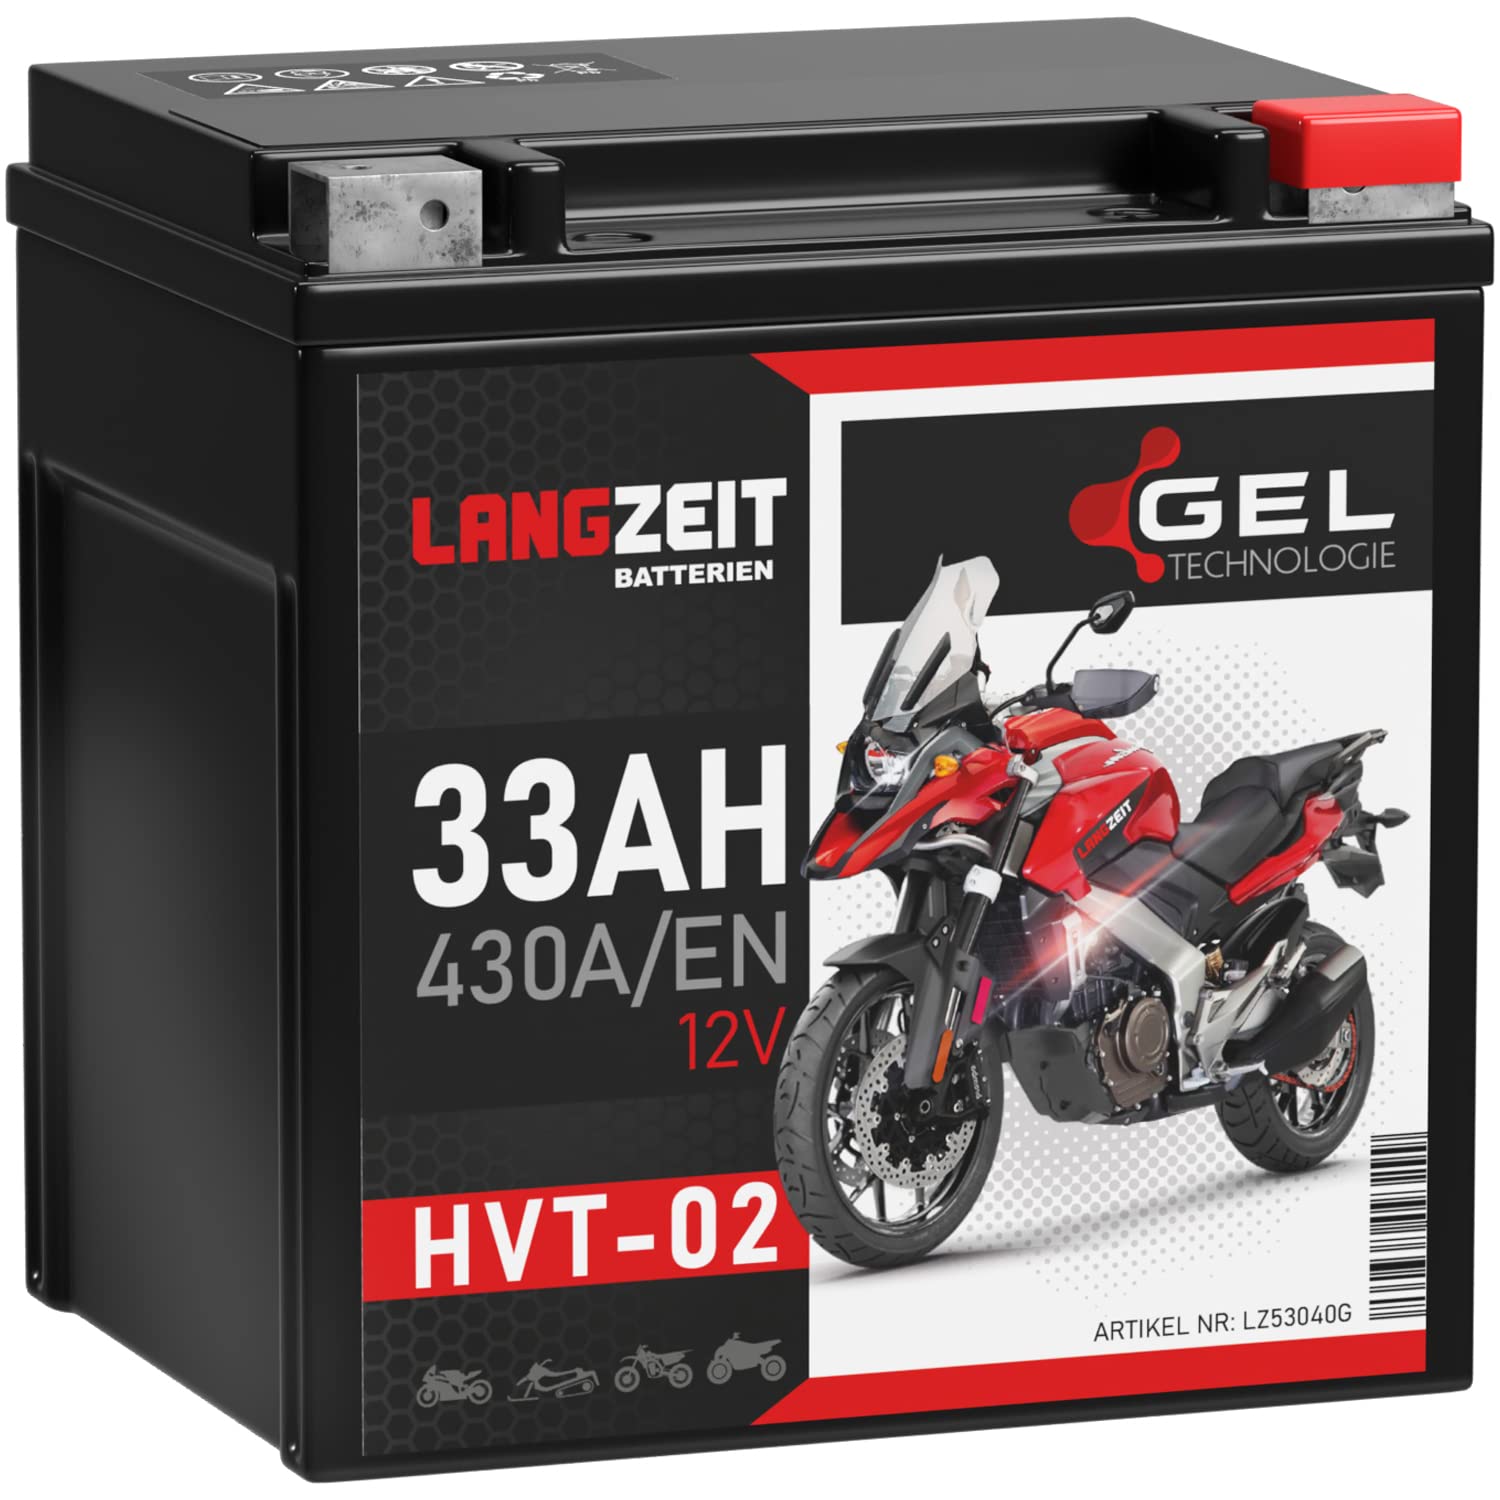 LANGZEIT HVT-02 HVT-2 Motorradbatterie GEL 12V 33Ah 430A/EN Gel Batterie 12V YB30L-B YIX30L-BS 53040 doppelte Lebensdauer vorgeladen auslaufsicher wartungsfrei ersetzt 32Ah 30Ah von LANGZEIT Batterien